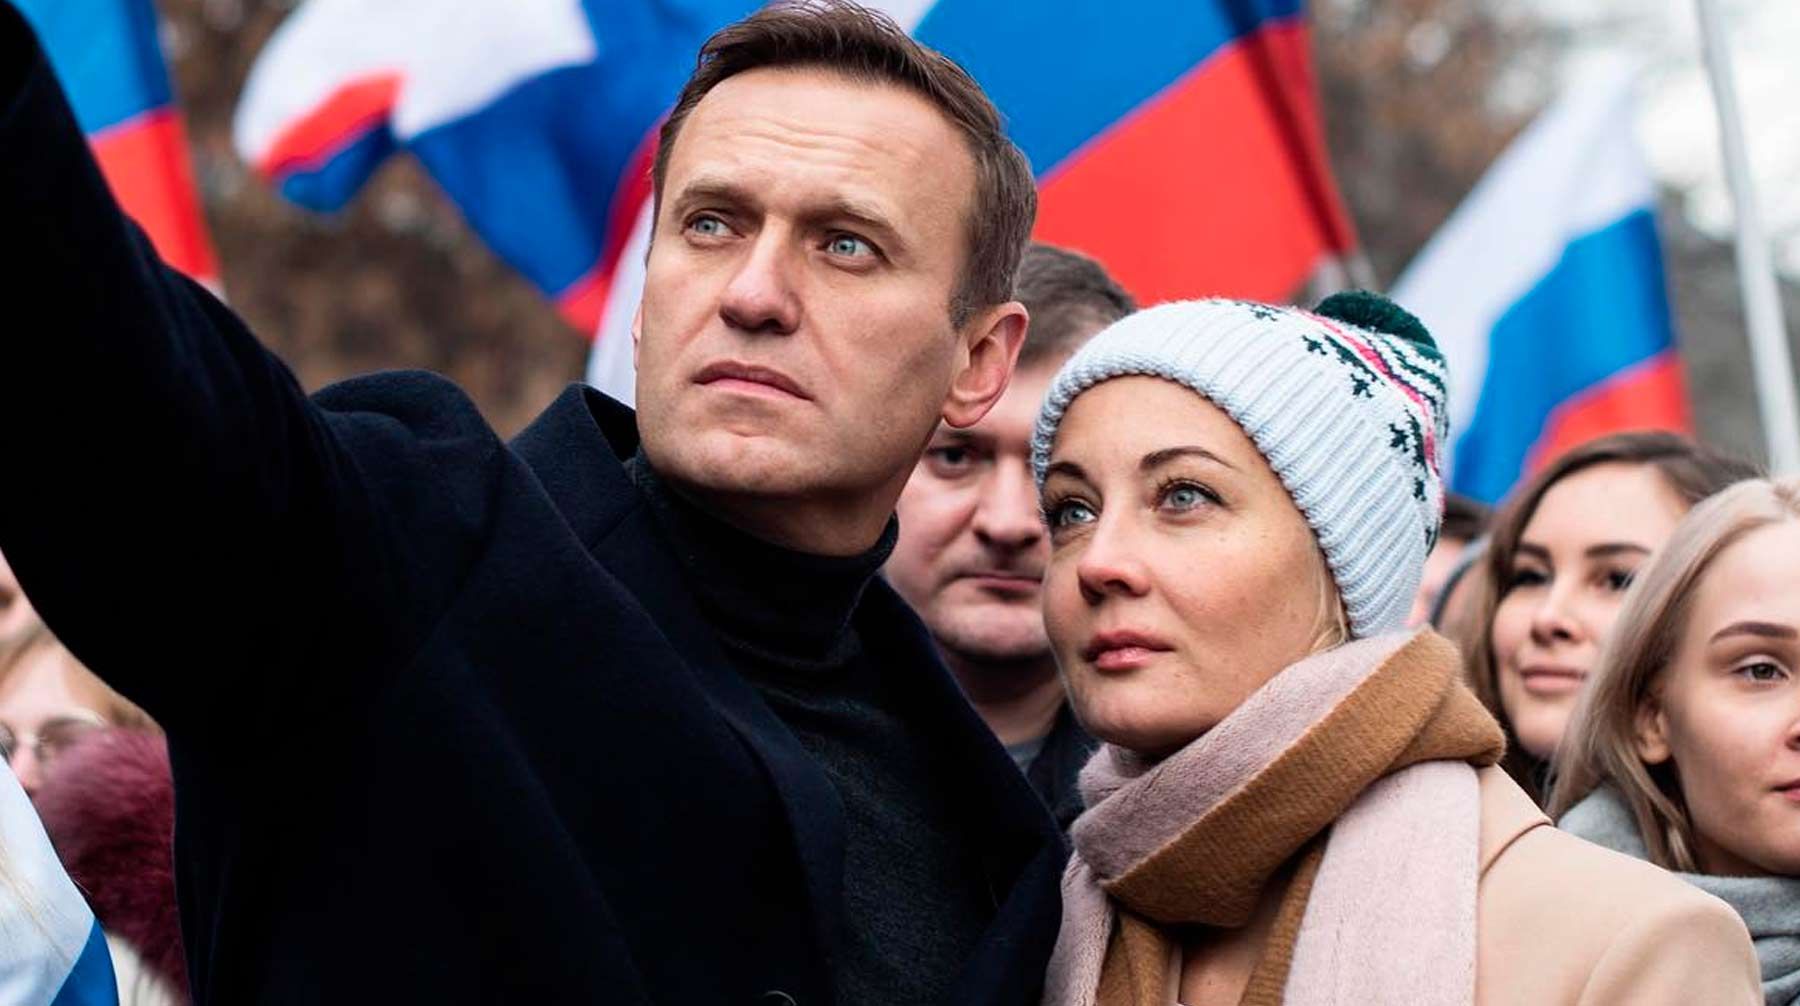 Юлію Навальну затримали на протестах у Москві 31 січня 2021: відео